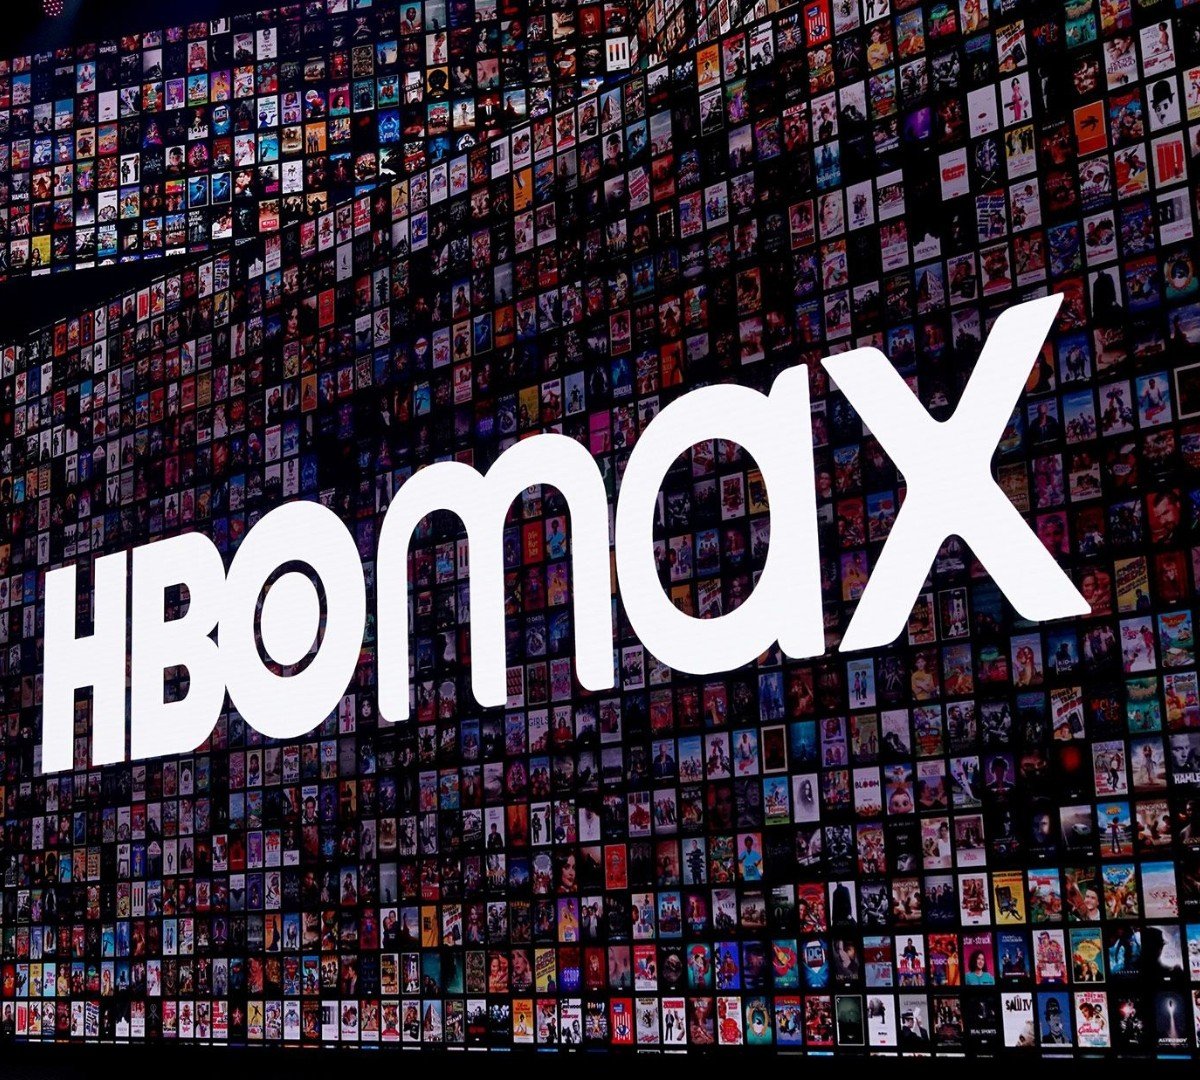 40 produções deixam o HBO Max em outubro; veja lista